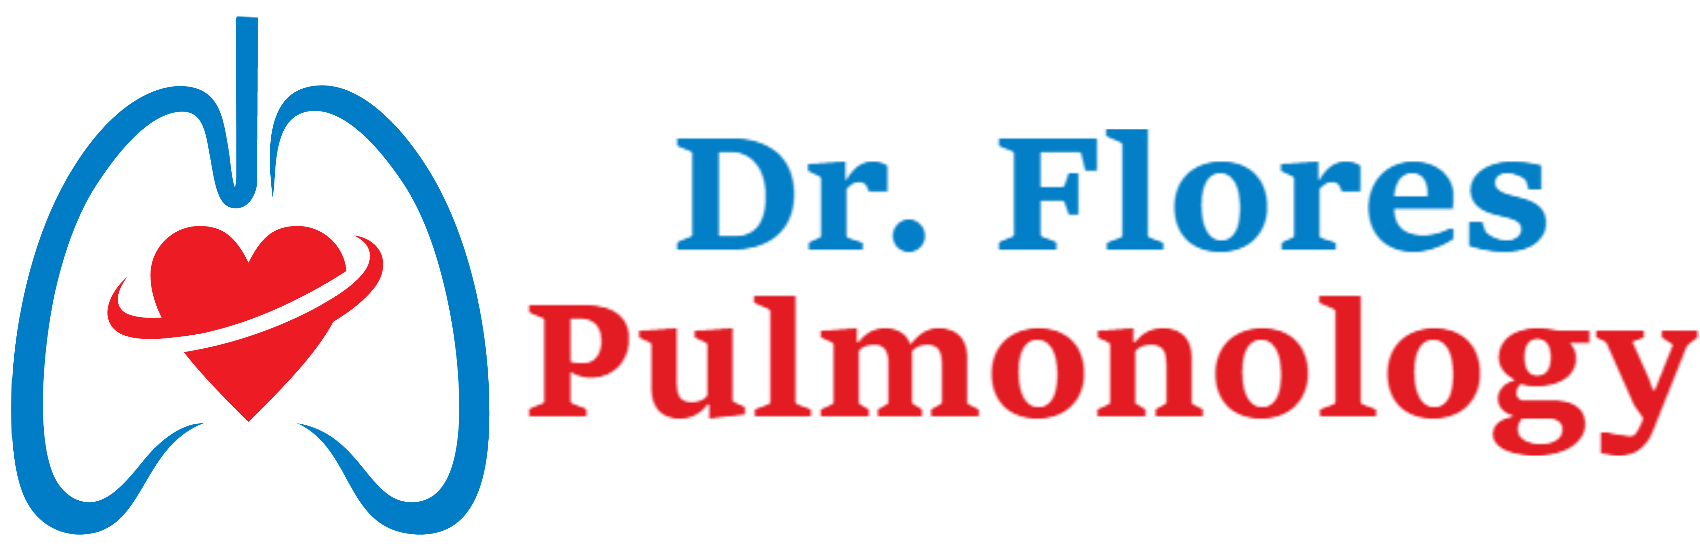 Dr. Flores Pulmonology